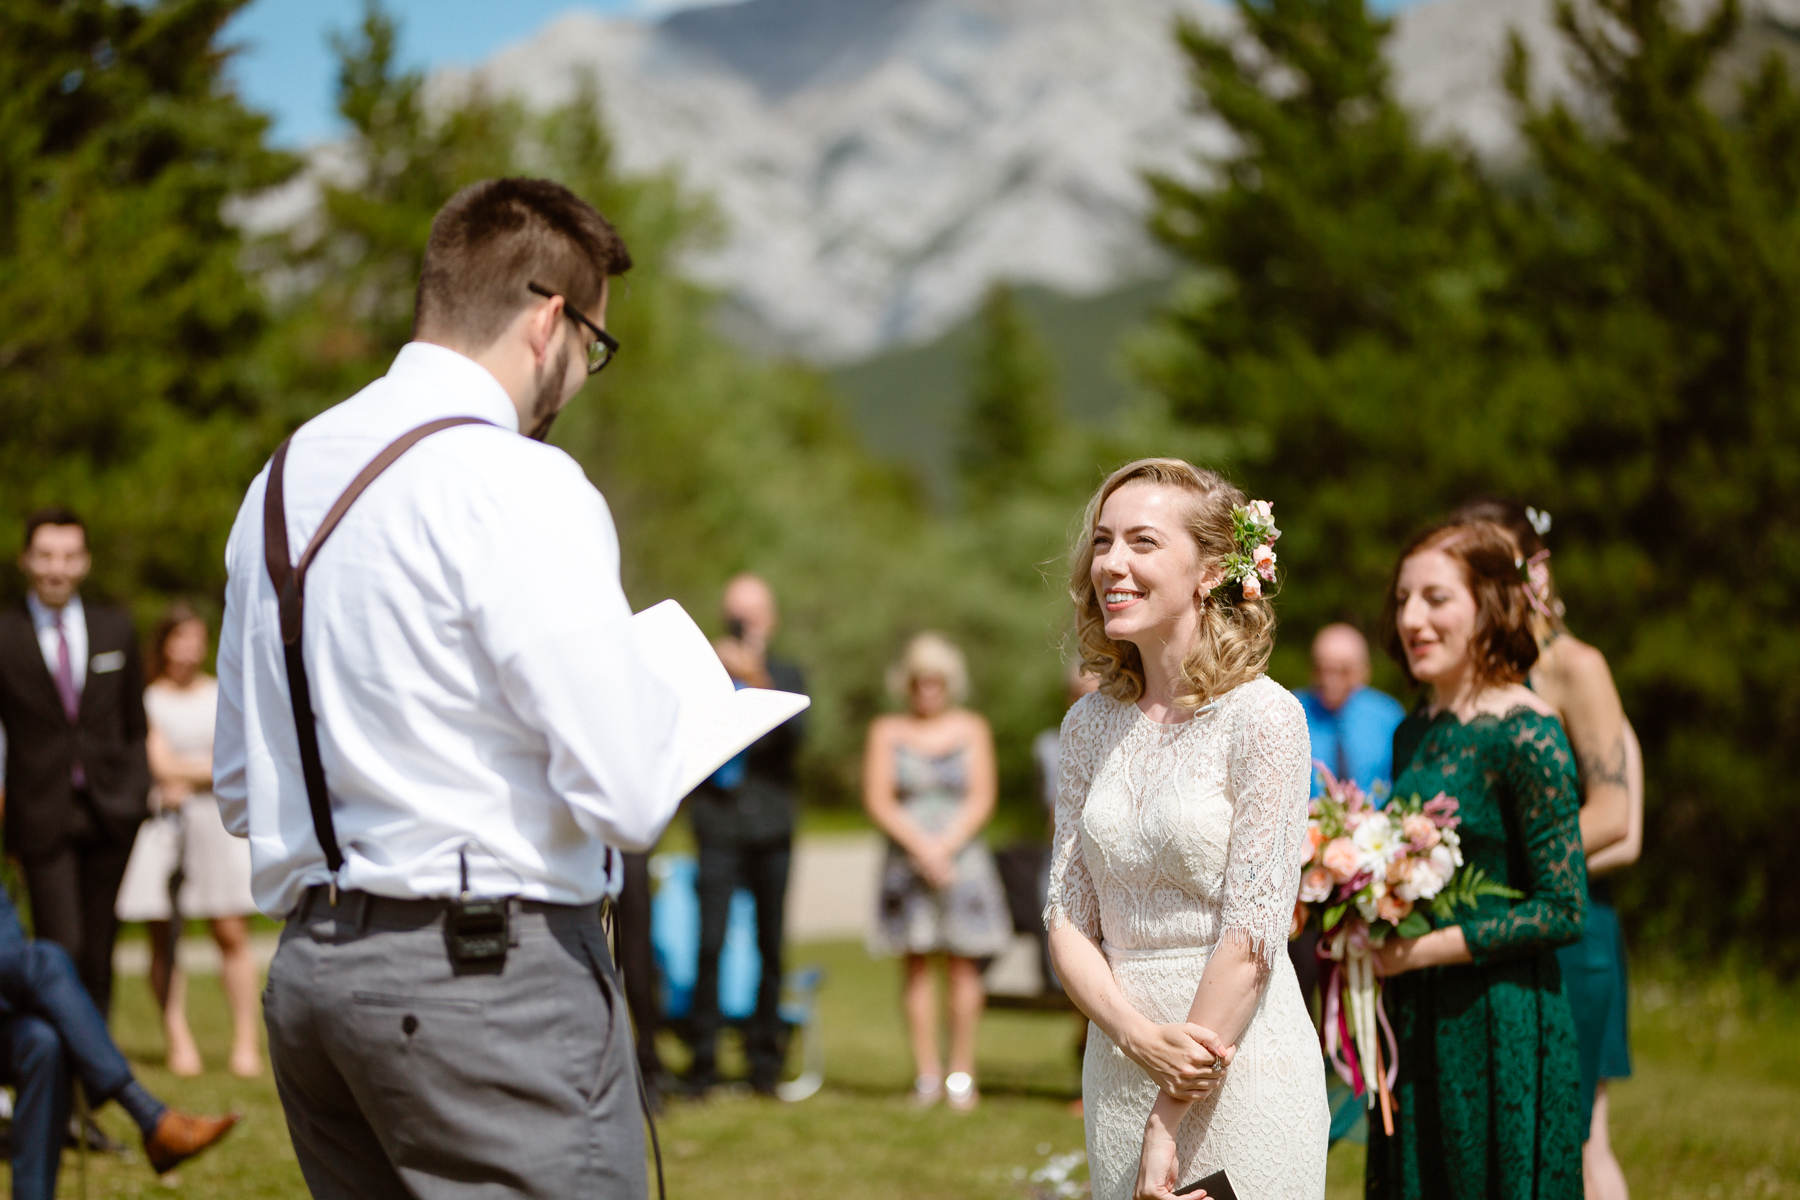 Kananaskis Wedding Photography at Pomeroy Mountain Lodge - Image  29